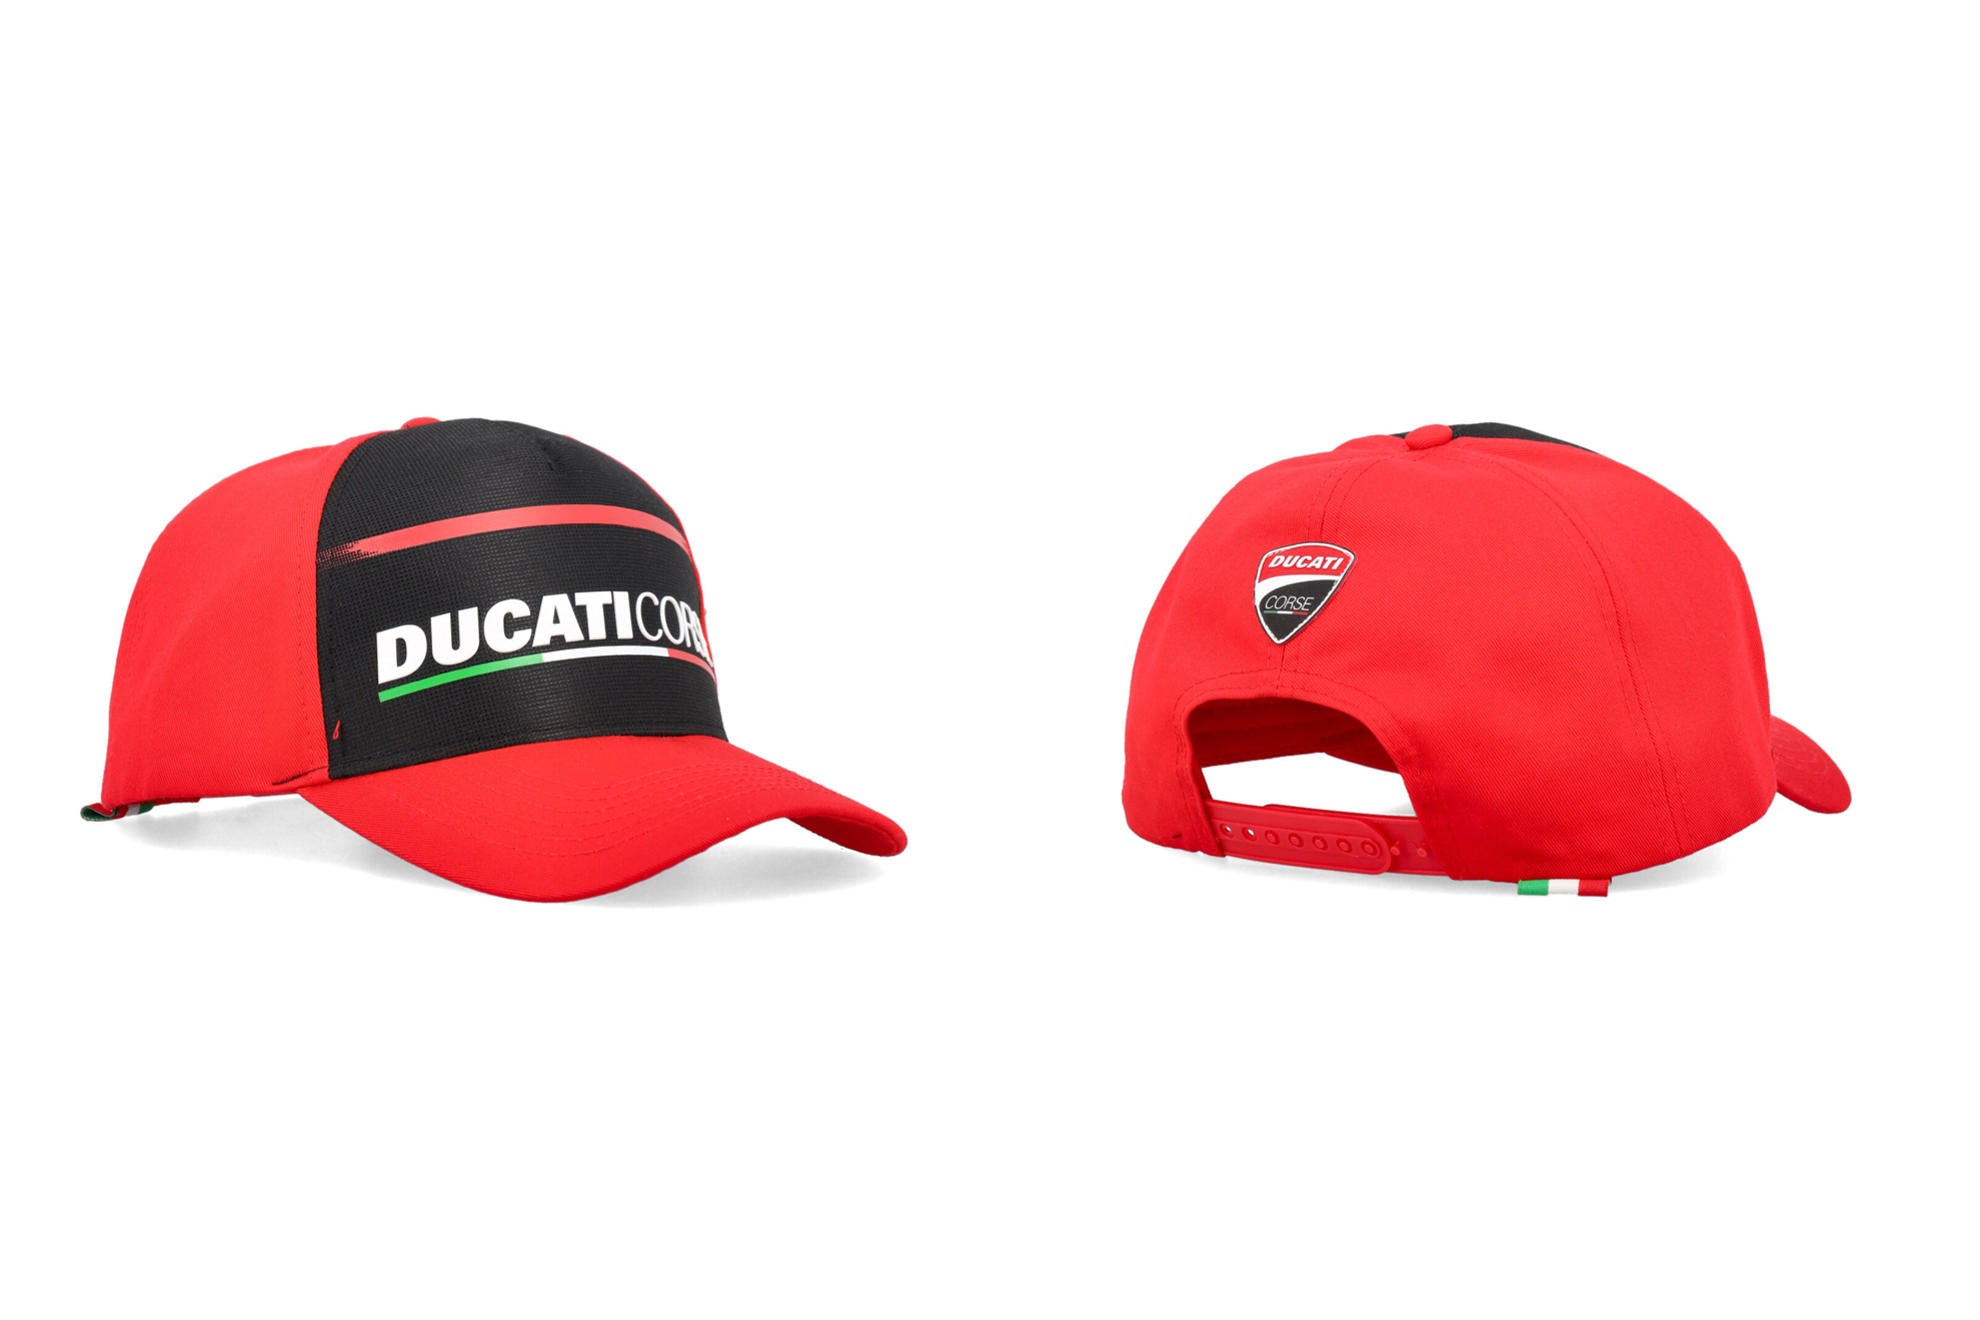 Cappellino Ducati Corse - Logo Ducati - Red and Black